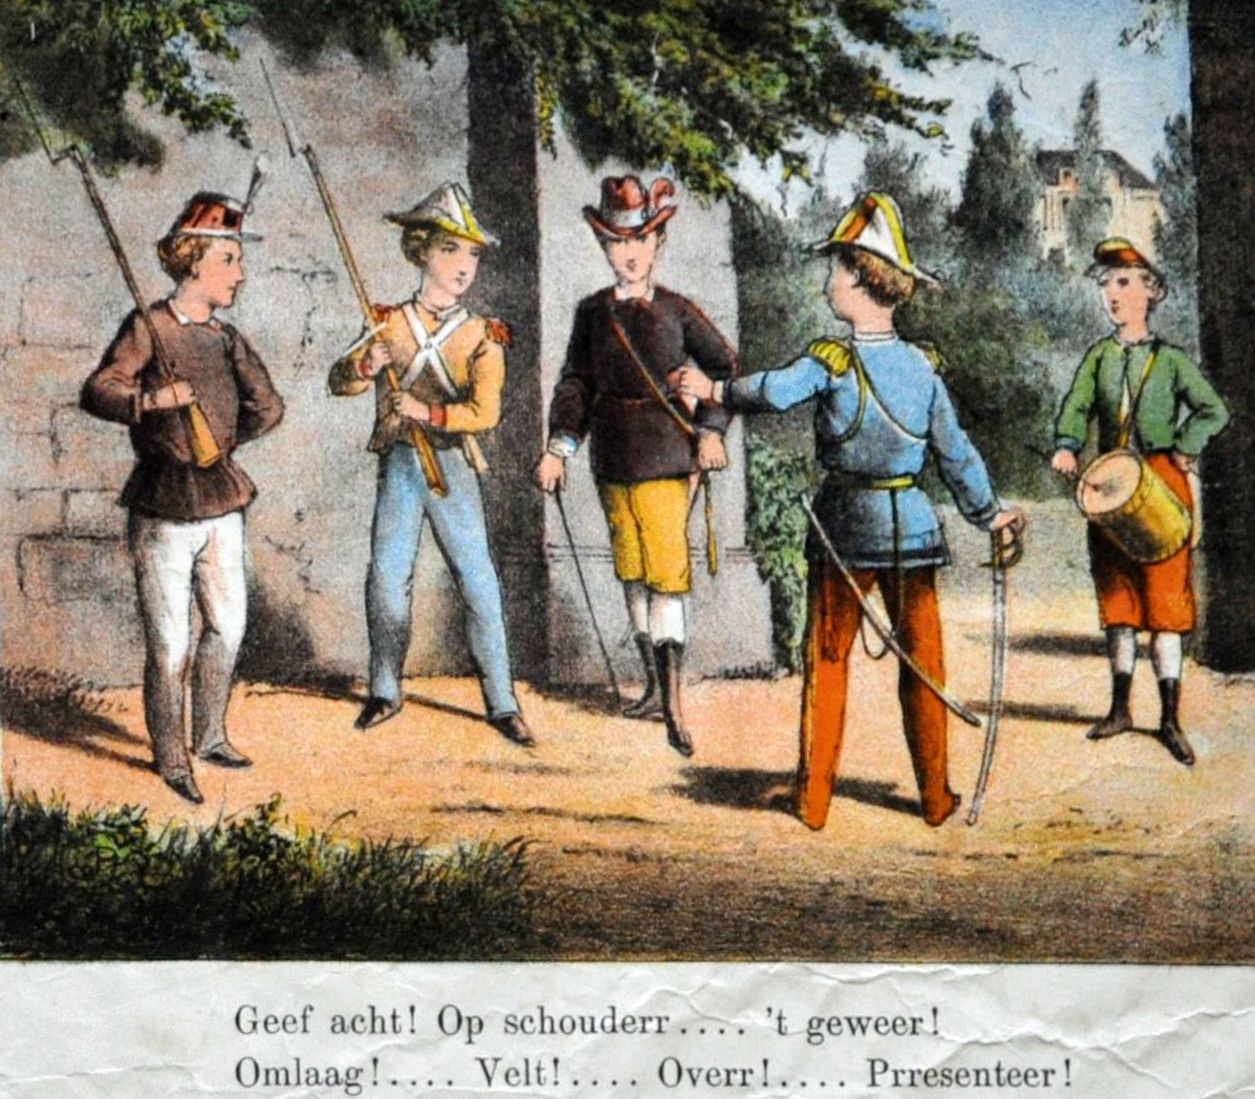 Welgestelde jongens spelen soldaatje, 19de eeuw. HMDB.